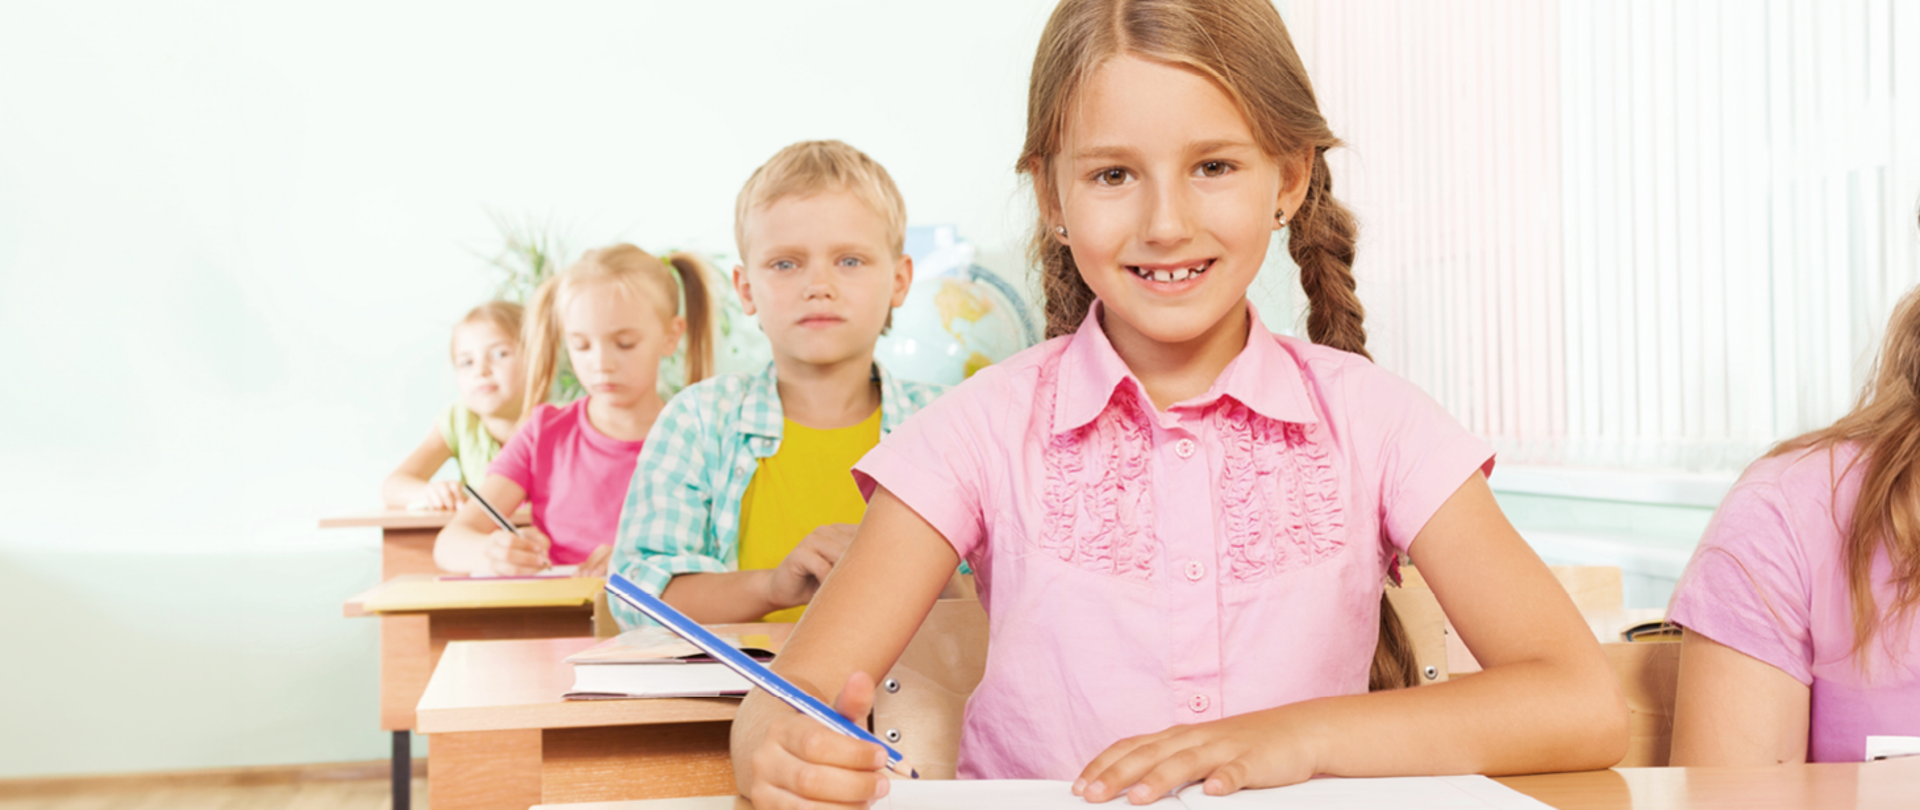 Na obrazku widzimy grupę dzieci siedzących przy drewnianych ławkach w jasnym klasie szkolnej. Po lewej stronie, kilkoro dzieci skupia uwagę na pisaniu lub rysowaniu, z zamyśleniem patrząc na swoje zeszyty. Na pierwszym planie jest dziewczynka w różowej koszulce z długimi, splecionymi warkoczami uśmiecha się szeroko, trzymając niebieską kredkę w prawej ręce i spoglądając w kierunku kamery. Wydaje się być wesoła i gotowa do nauki. Światło w pomieszczeniu jest jasne i przyjemne.